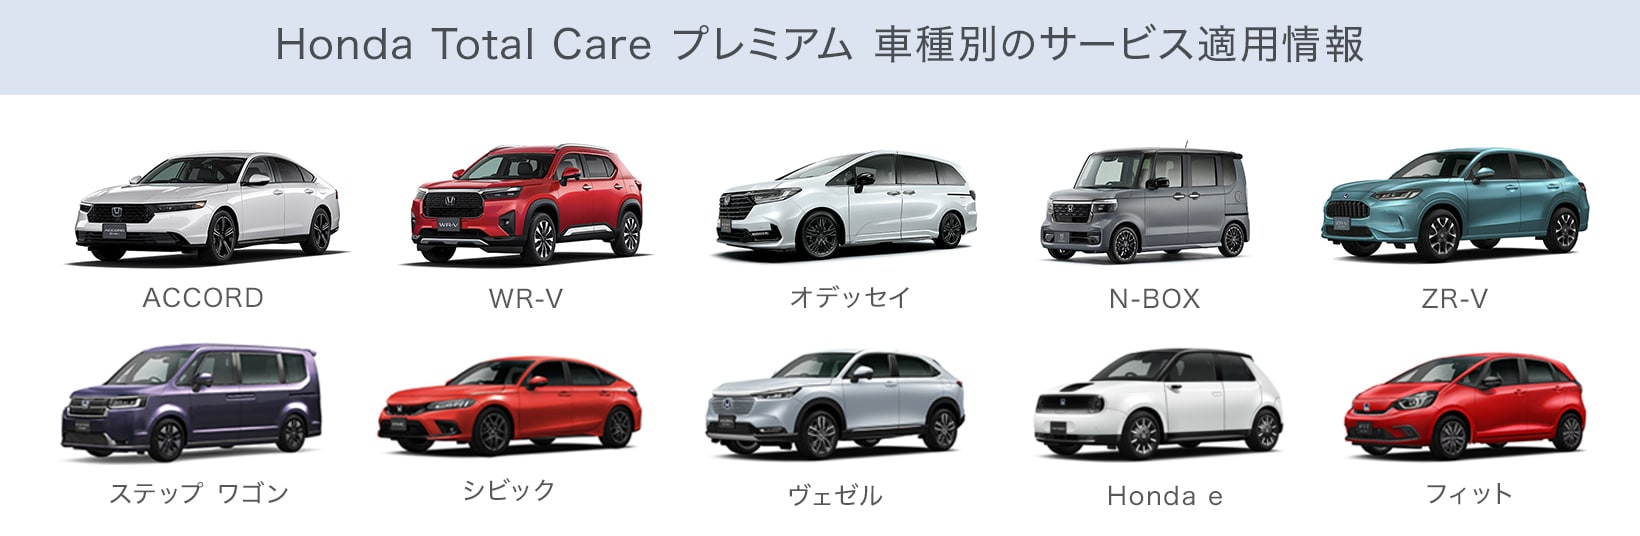 Honda Total Care プレミアム 車種別のサービス適用情報はこちら